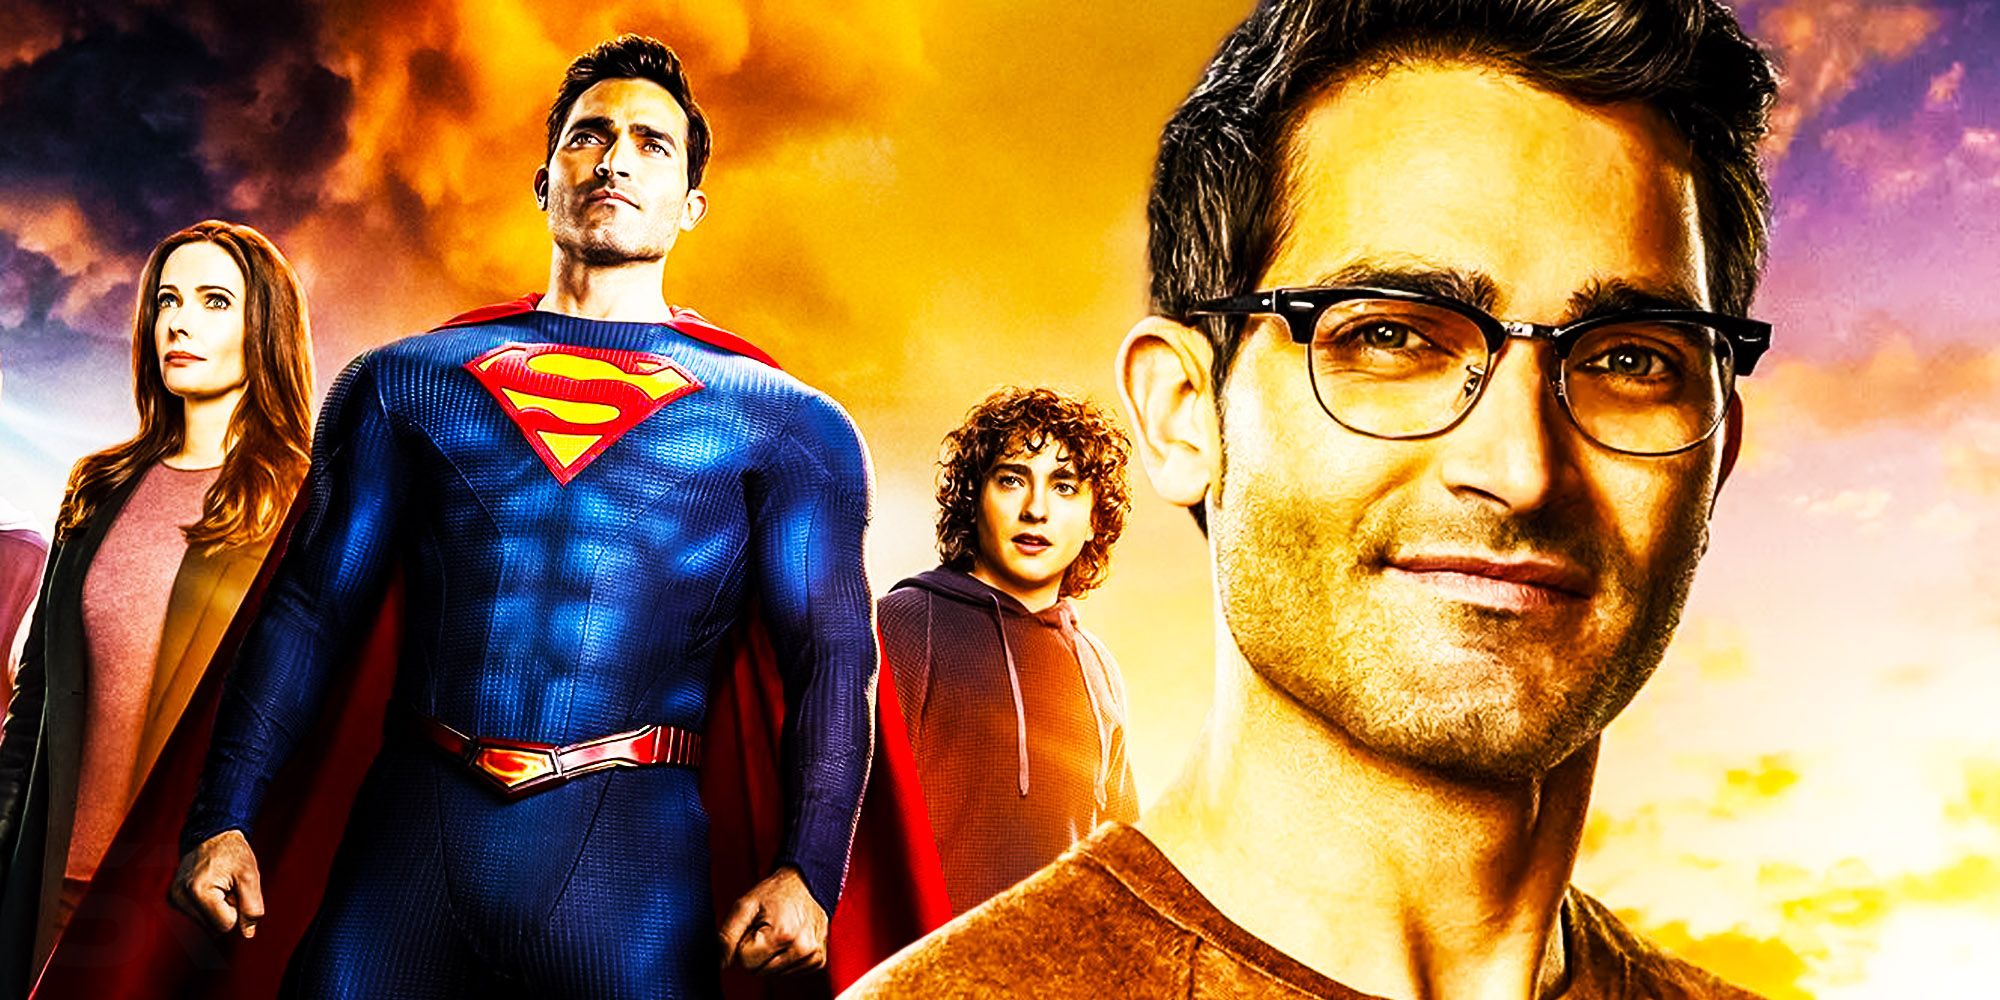 Superman et lois saison 3 superman tyler hoechlin nouveau costume